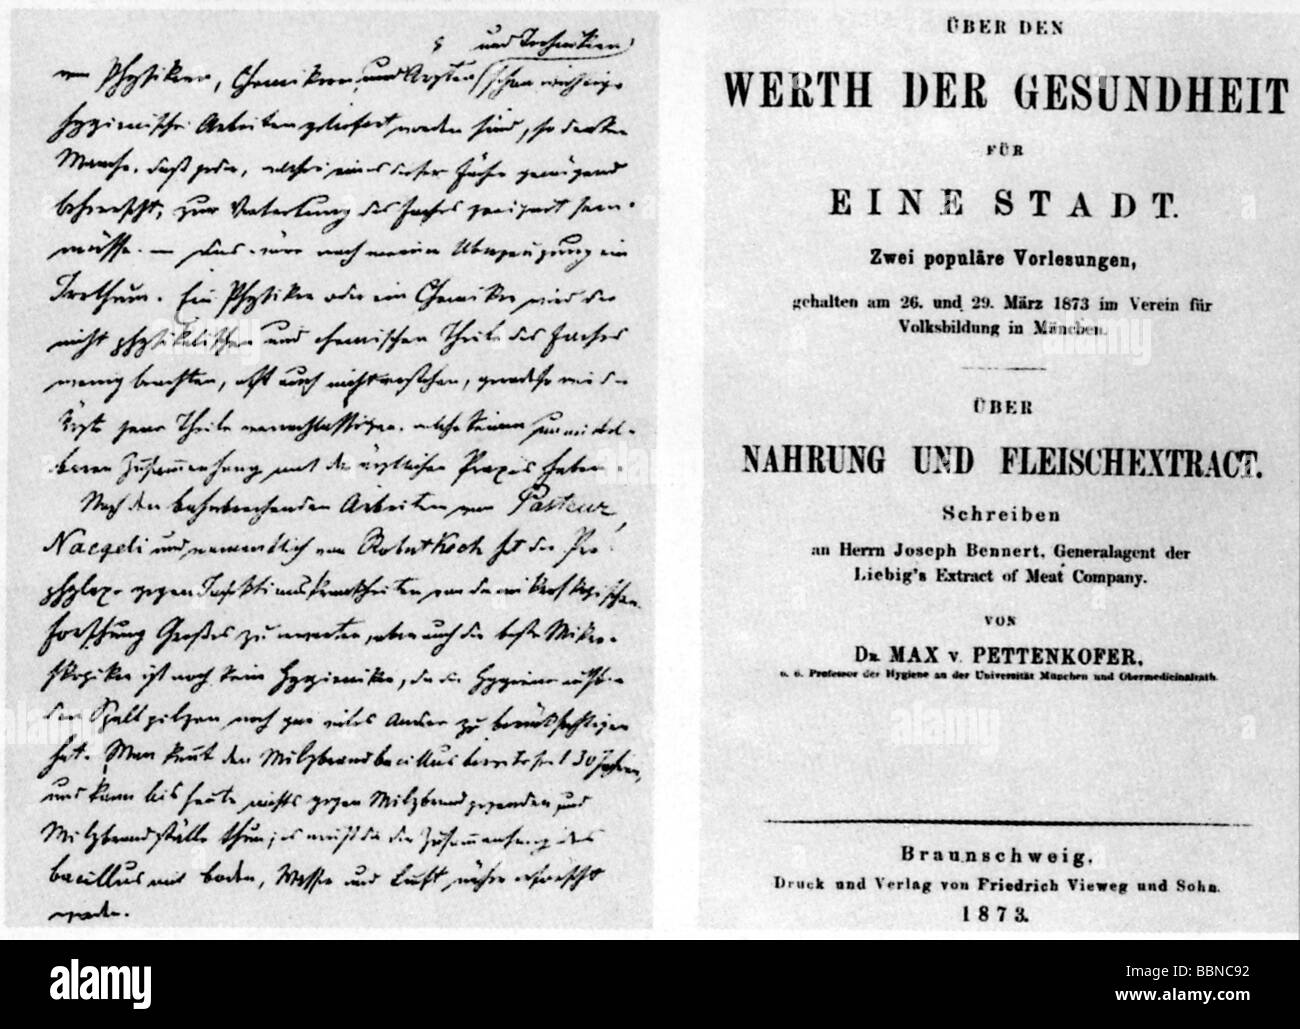 Pettenkofer, Max von, 3.12.1818 - 10.2.1901, German medic / physician ( hygienist), title of his book 'Werth der Gesundheit für eine Stadt', 1873, Stock Photo